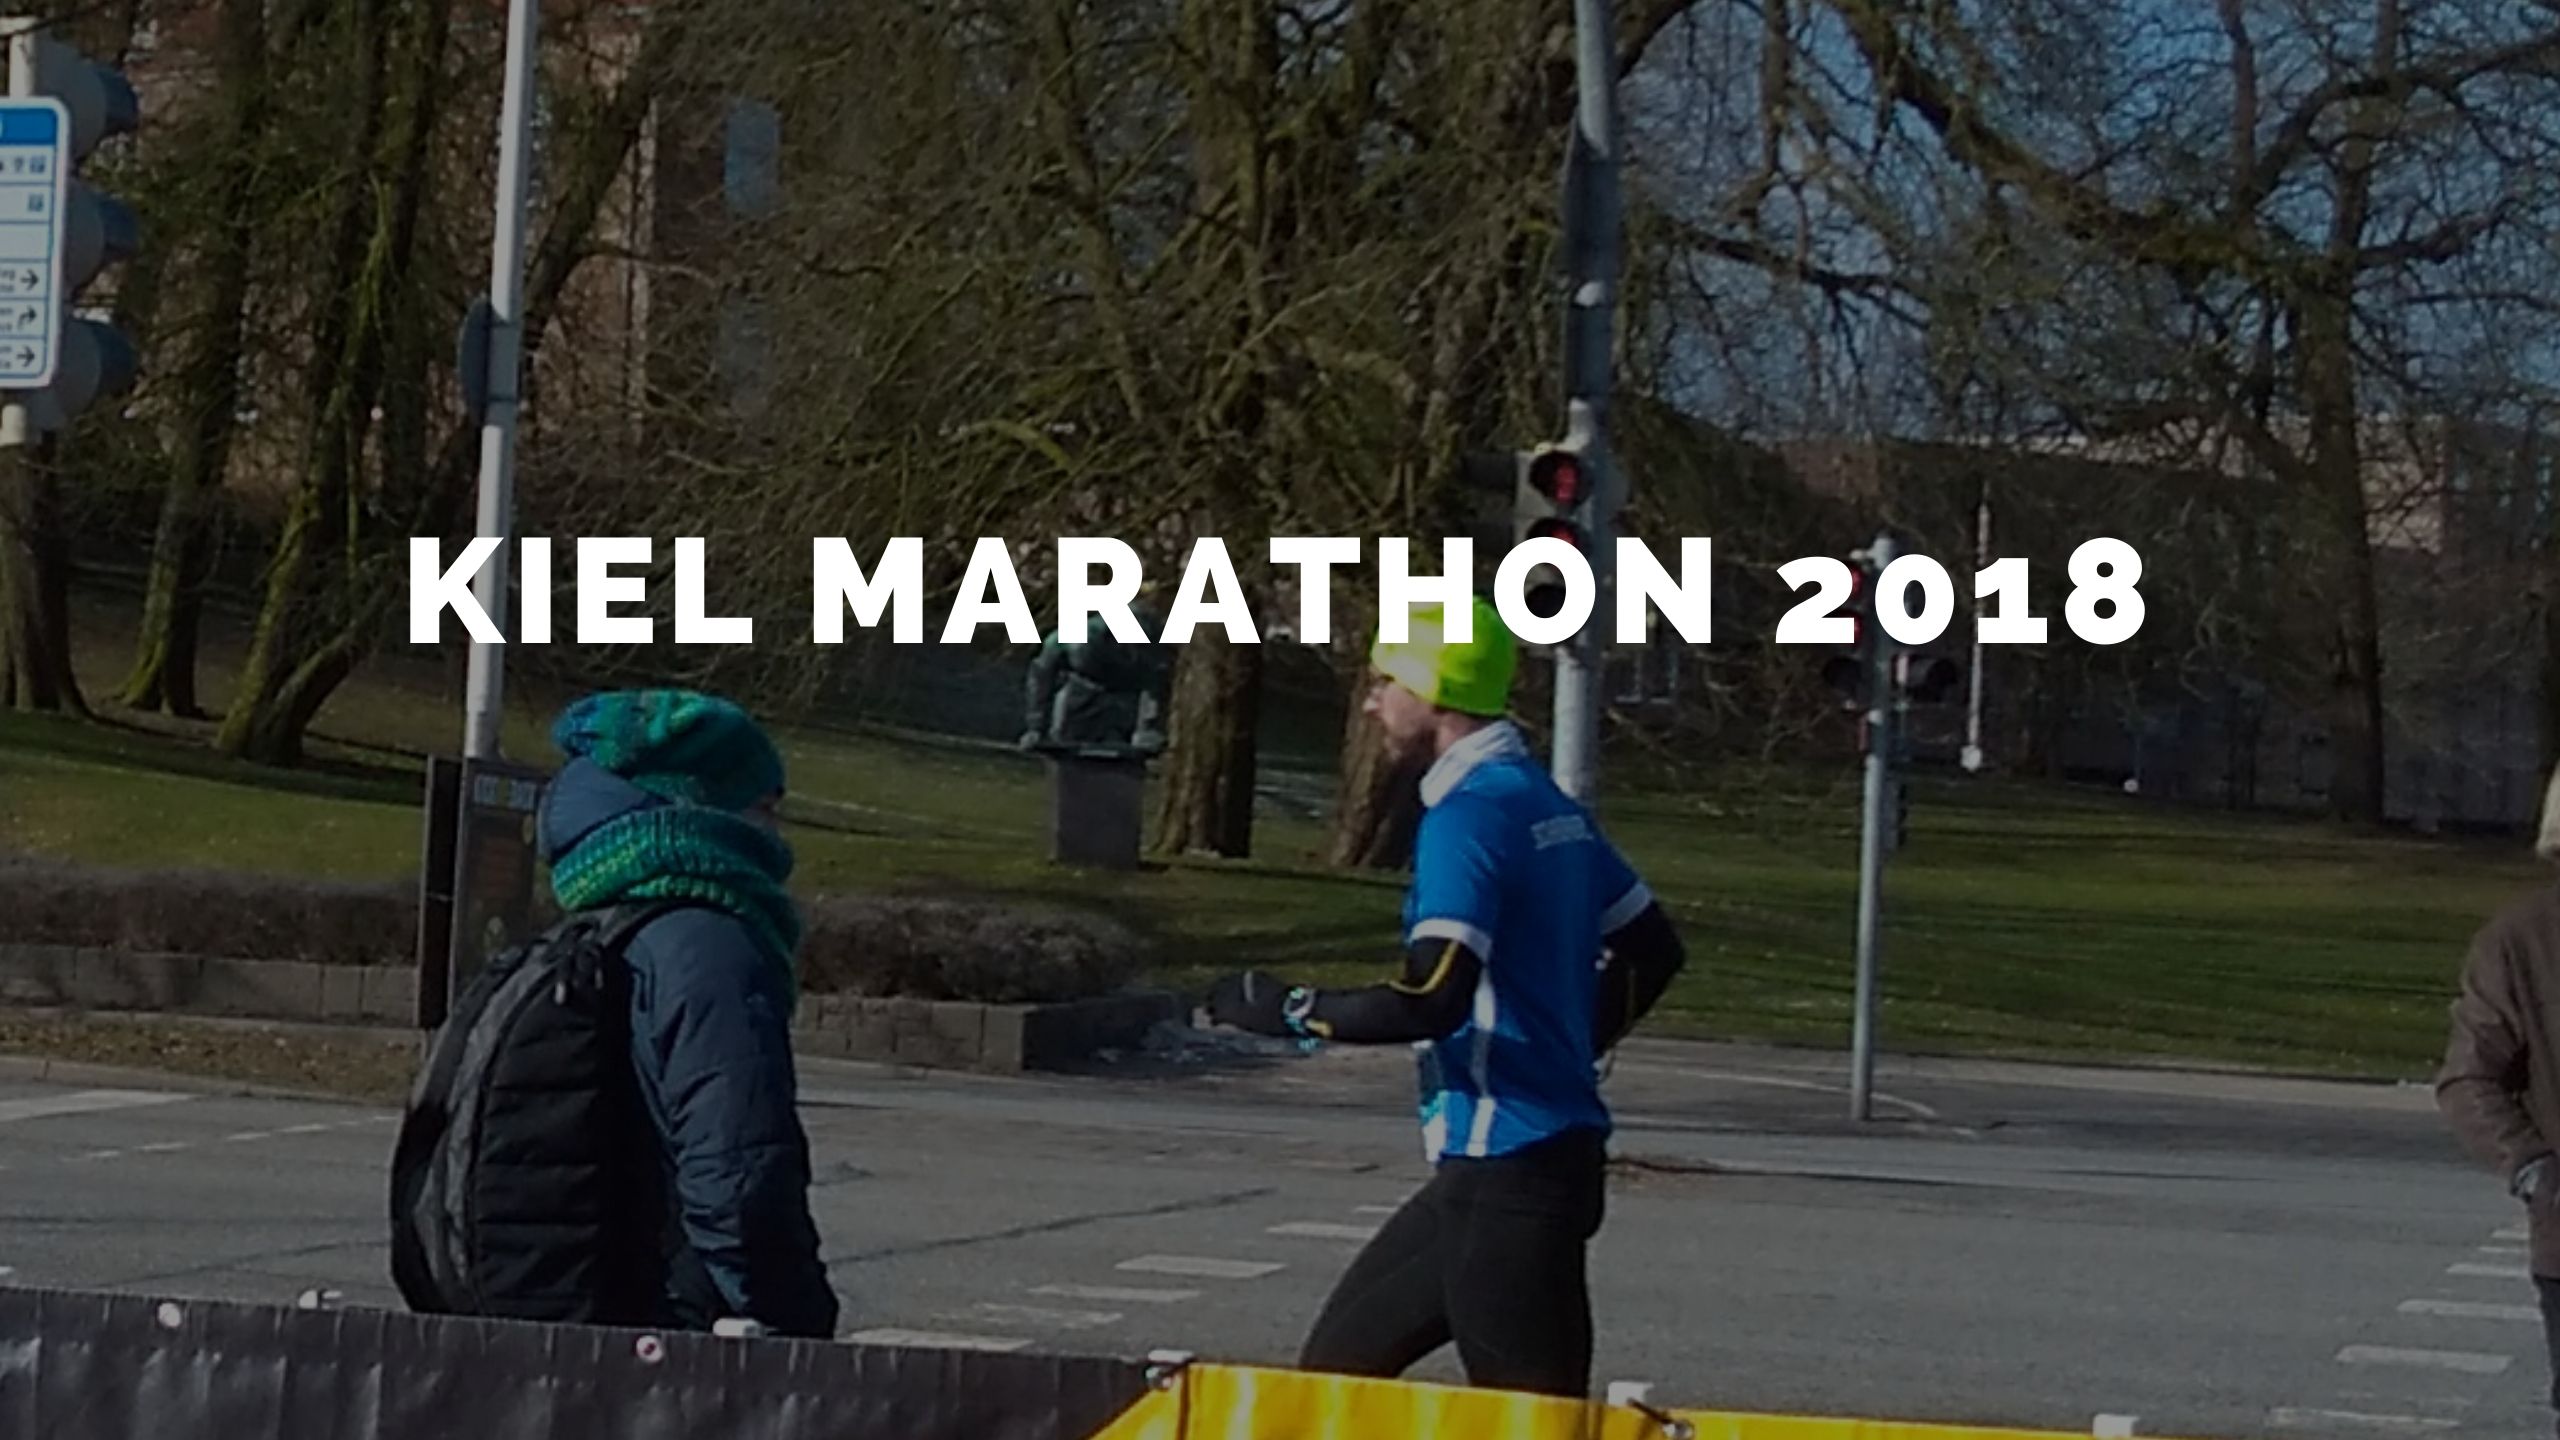 Kiel Marathon 2018